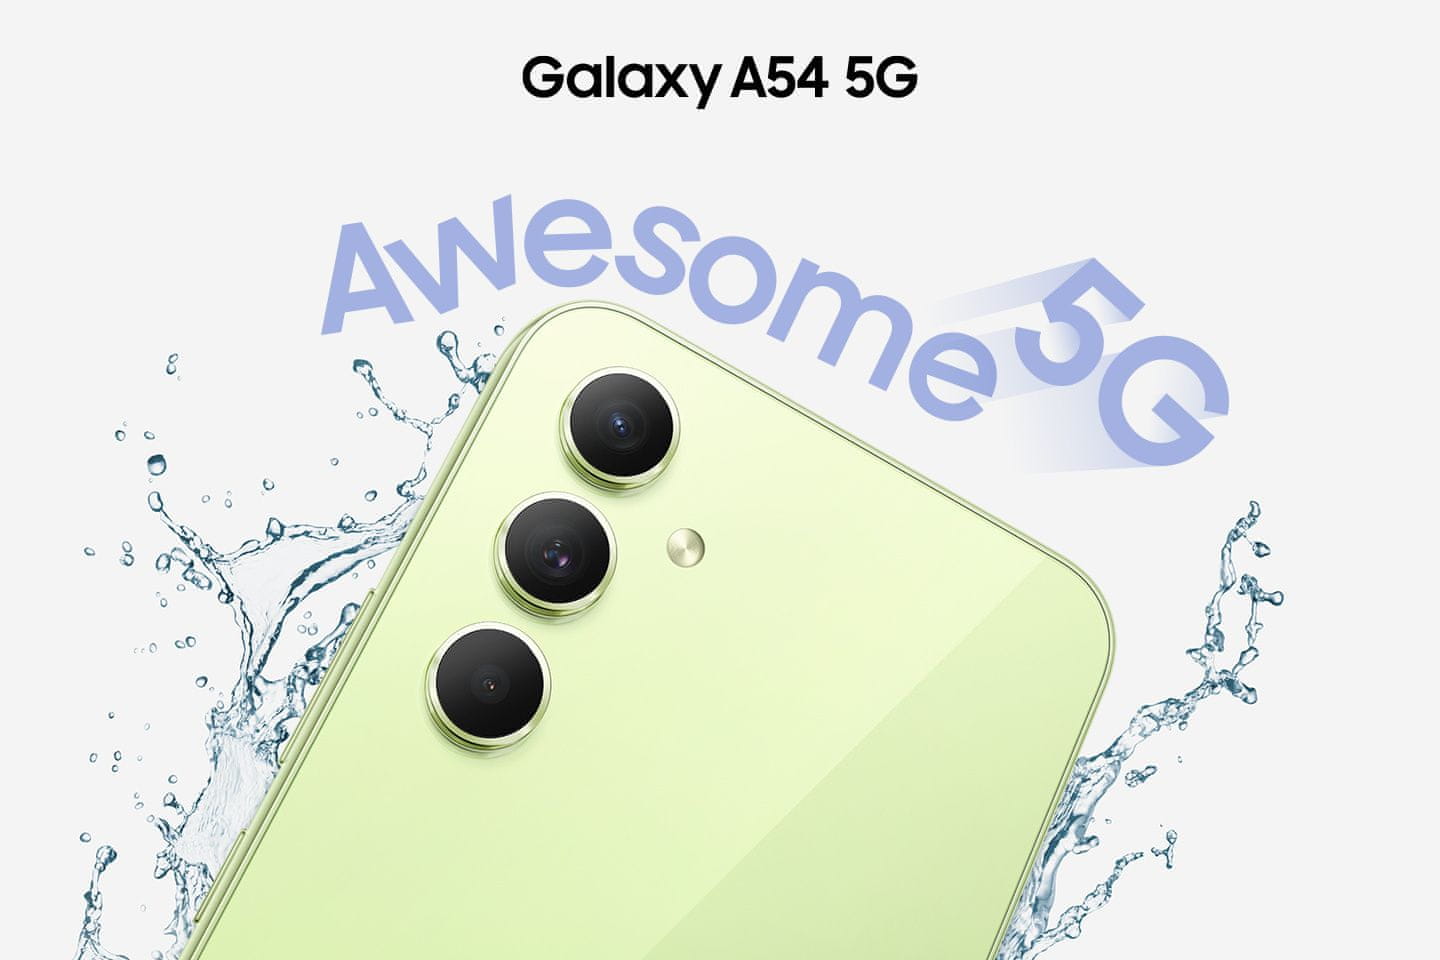 Samsung Galaxy A54 5G, inteligentný telefón, vlajková loď 6,5-palcový displej AMOLED obnovovacia frekvencia stabilizácia obrazu štyri fotoaparáty najrýchlejšie 5G pripojenie 5G internet podpora najrýchlejšieho pripojenia Gorilla Glass IP67 NFC